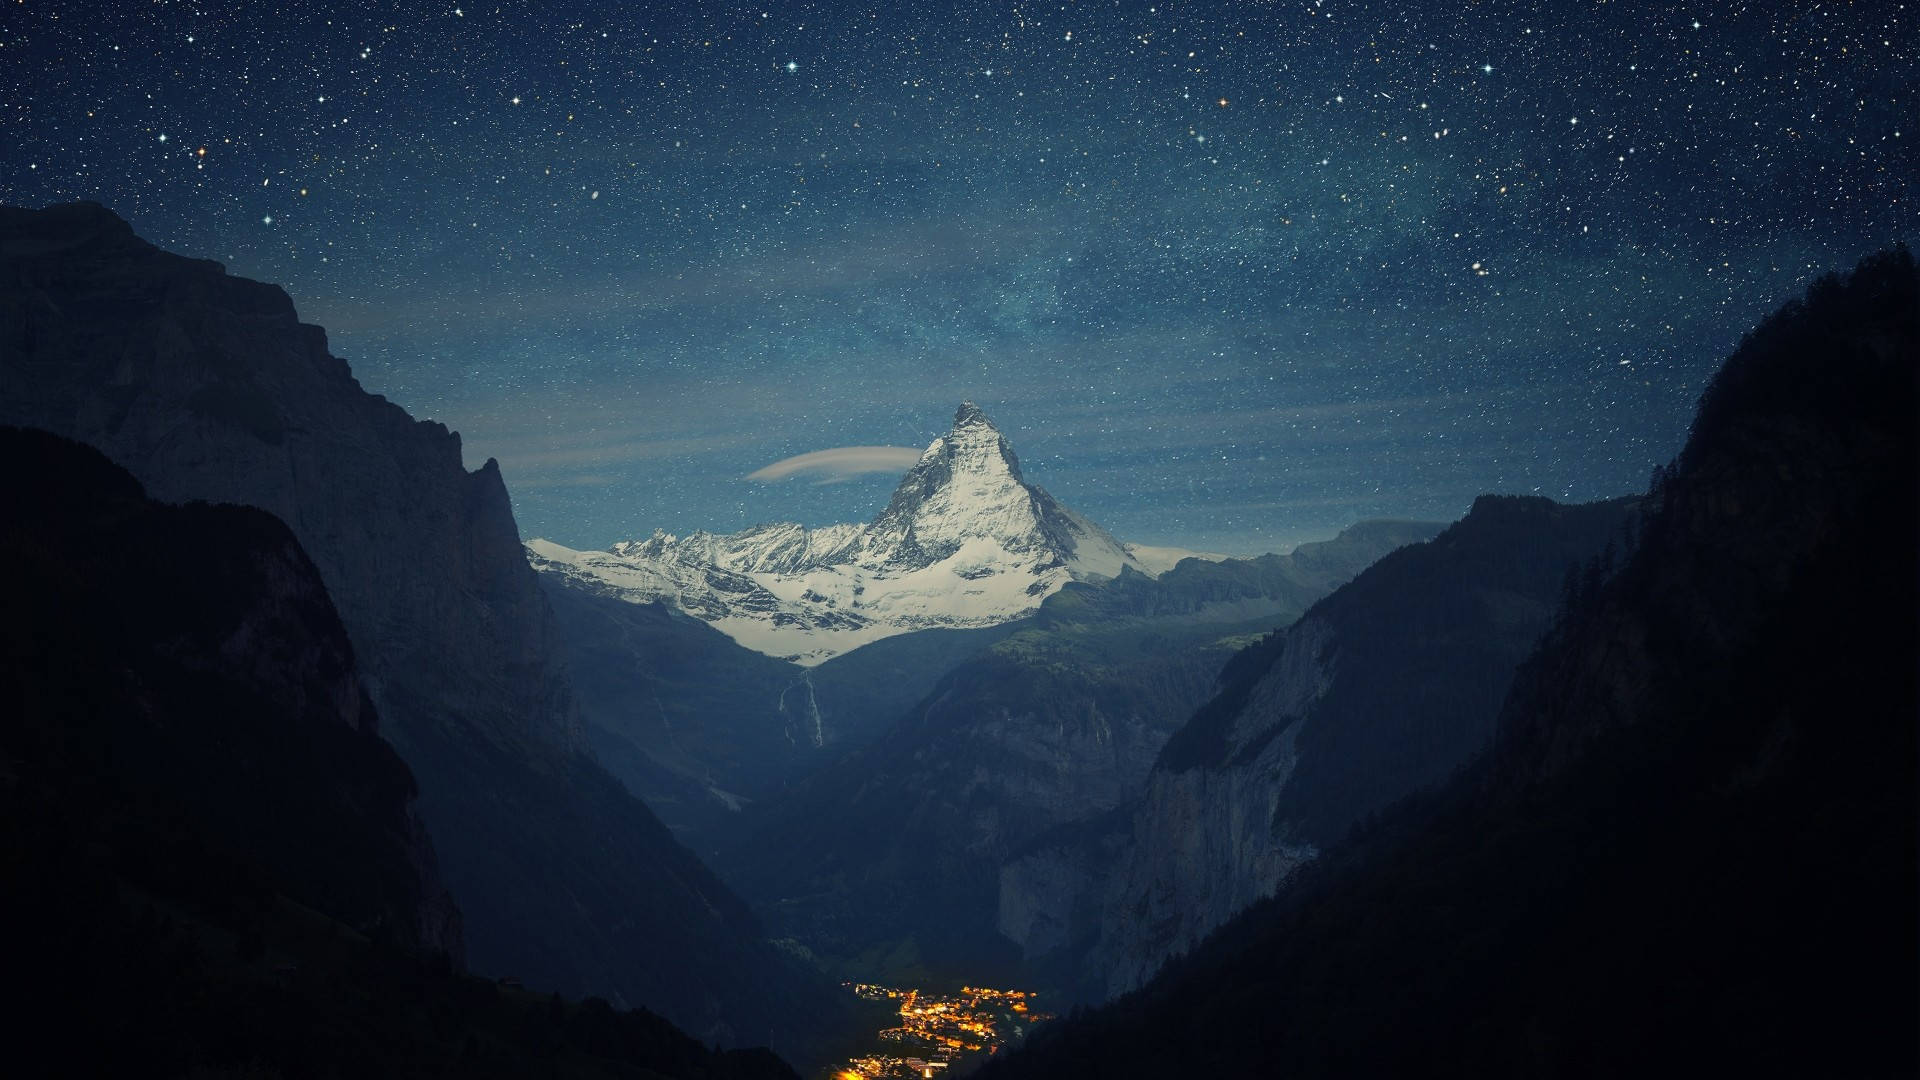 Hd Bjerg Matterhorn Wallpaper